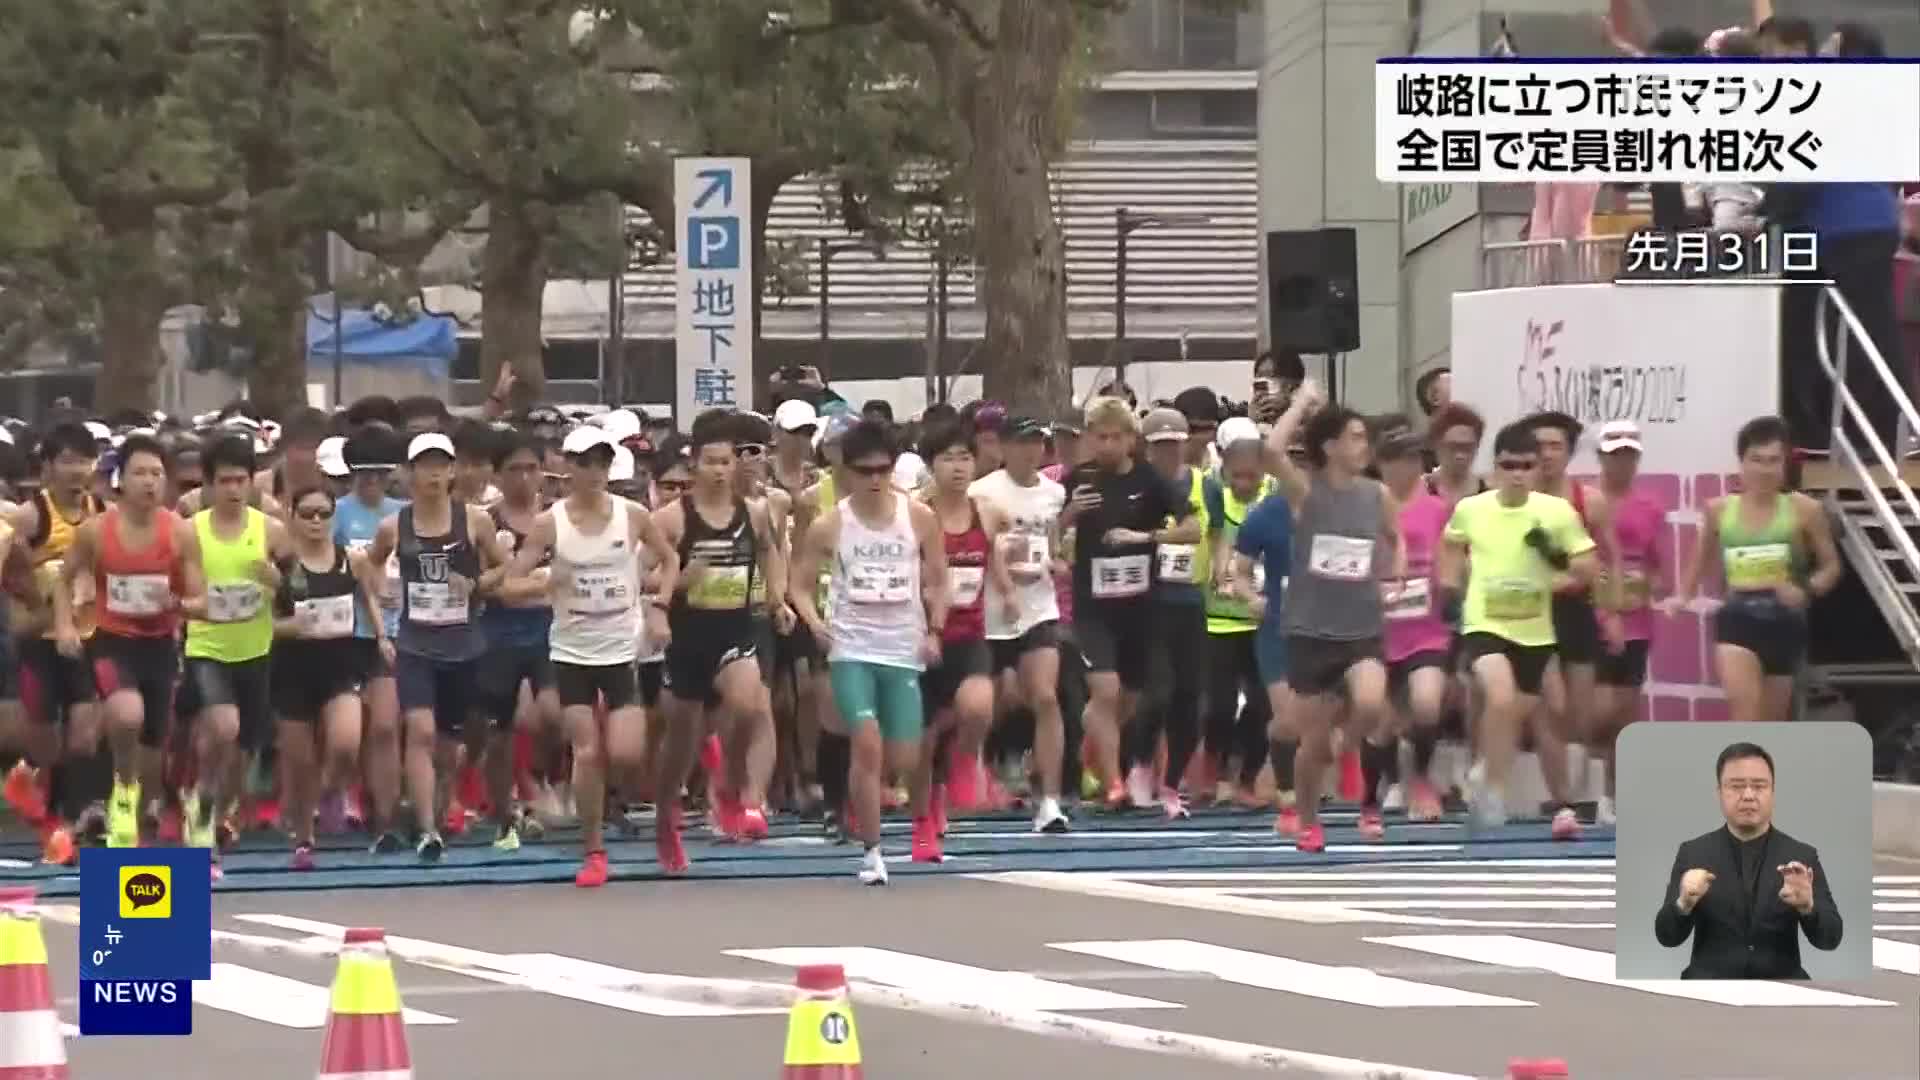 일본, 지자체 시민 마라톤 대회 정원 미달 잇따라